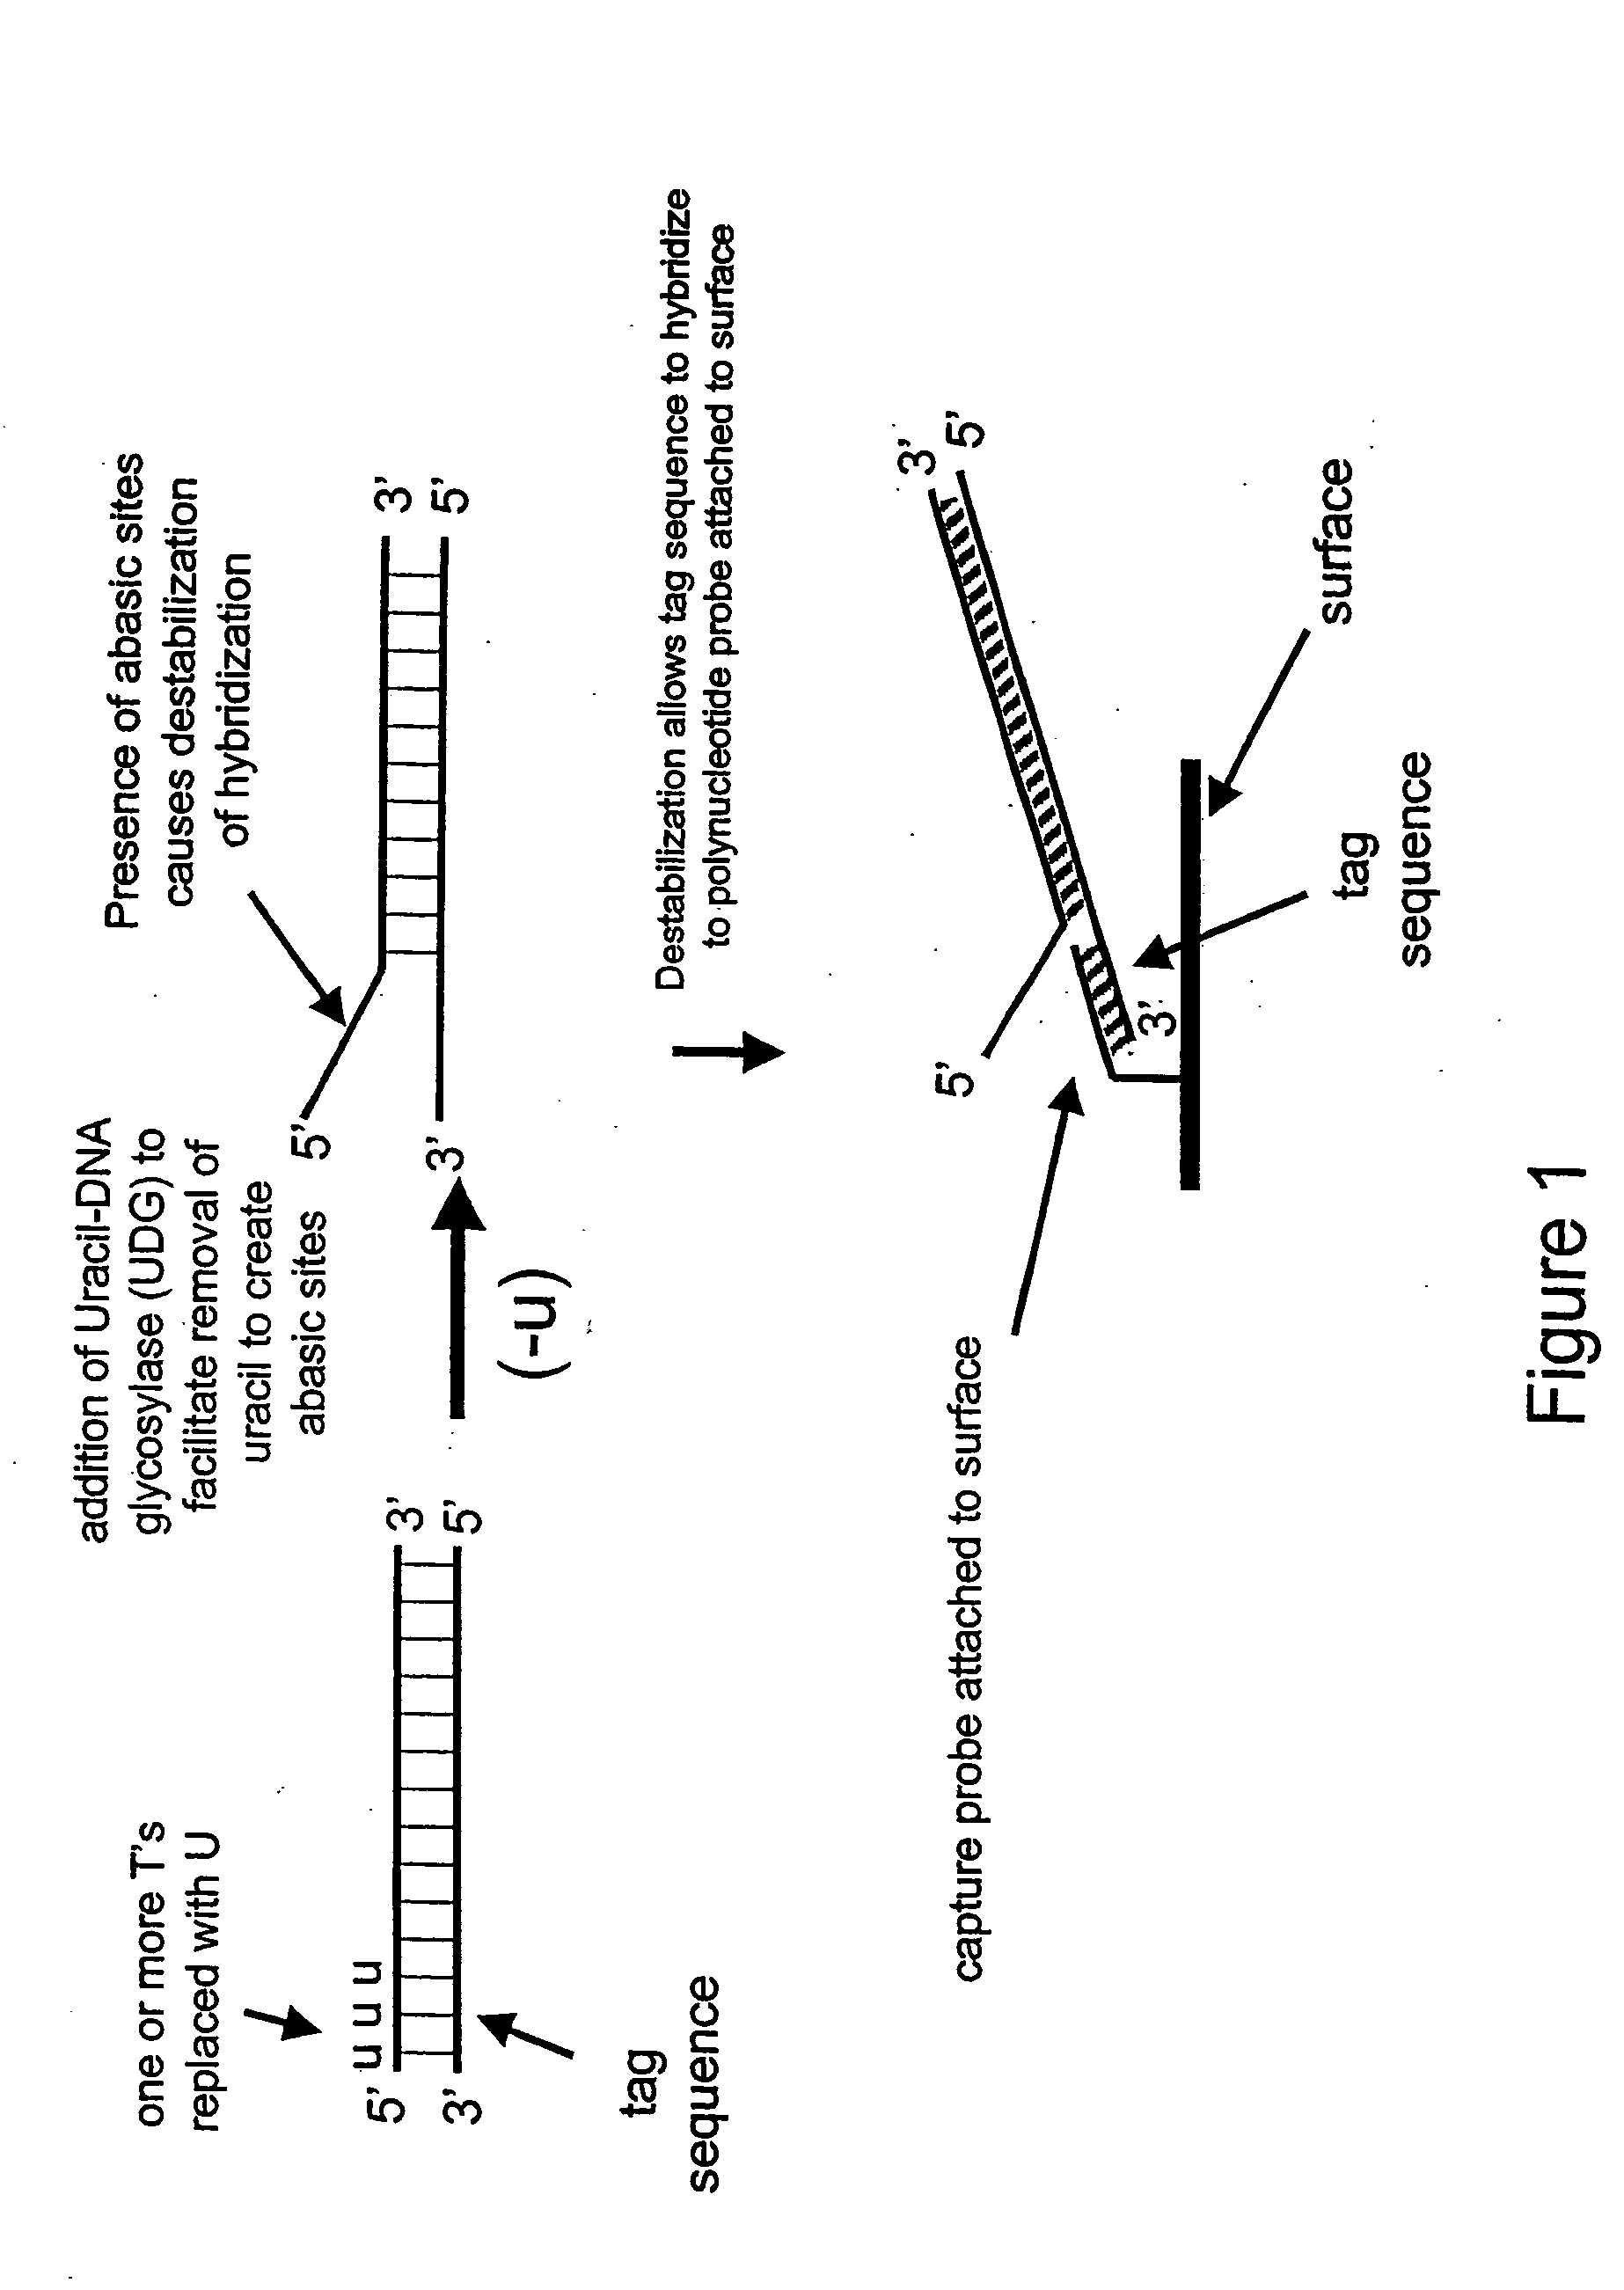 Nucleic acid hybridization methods